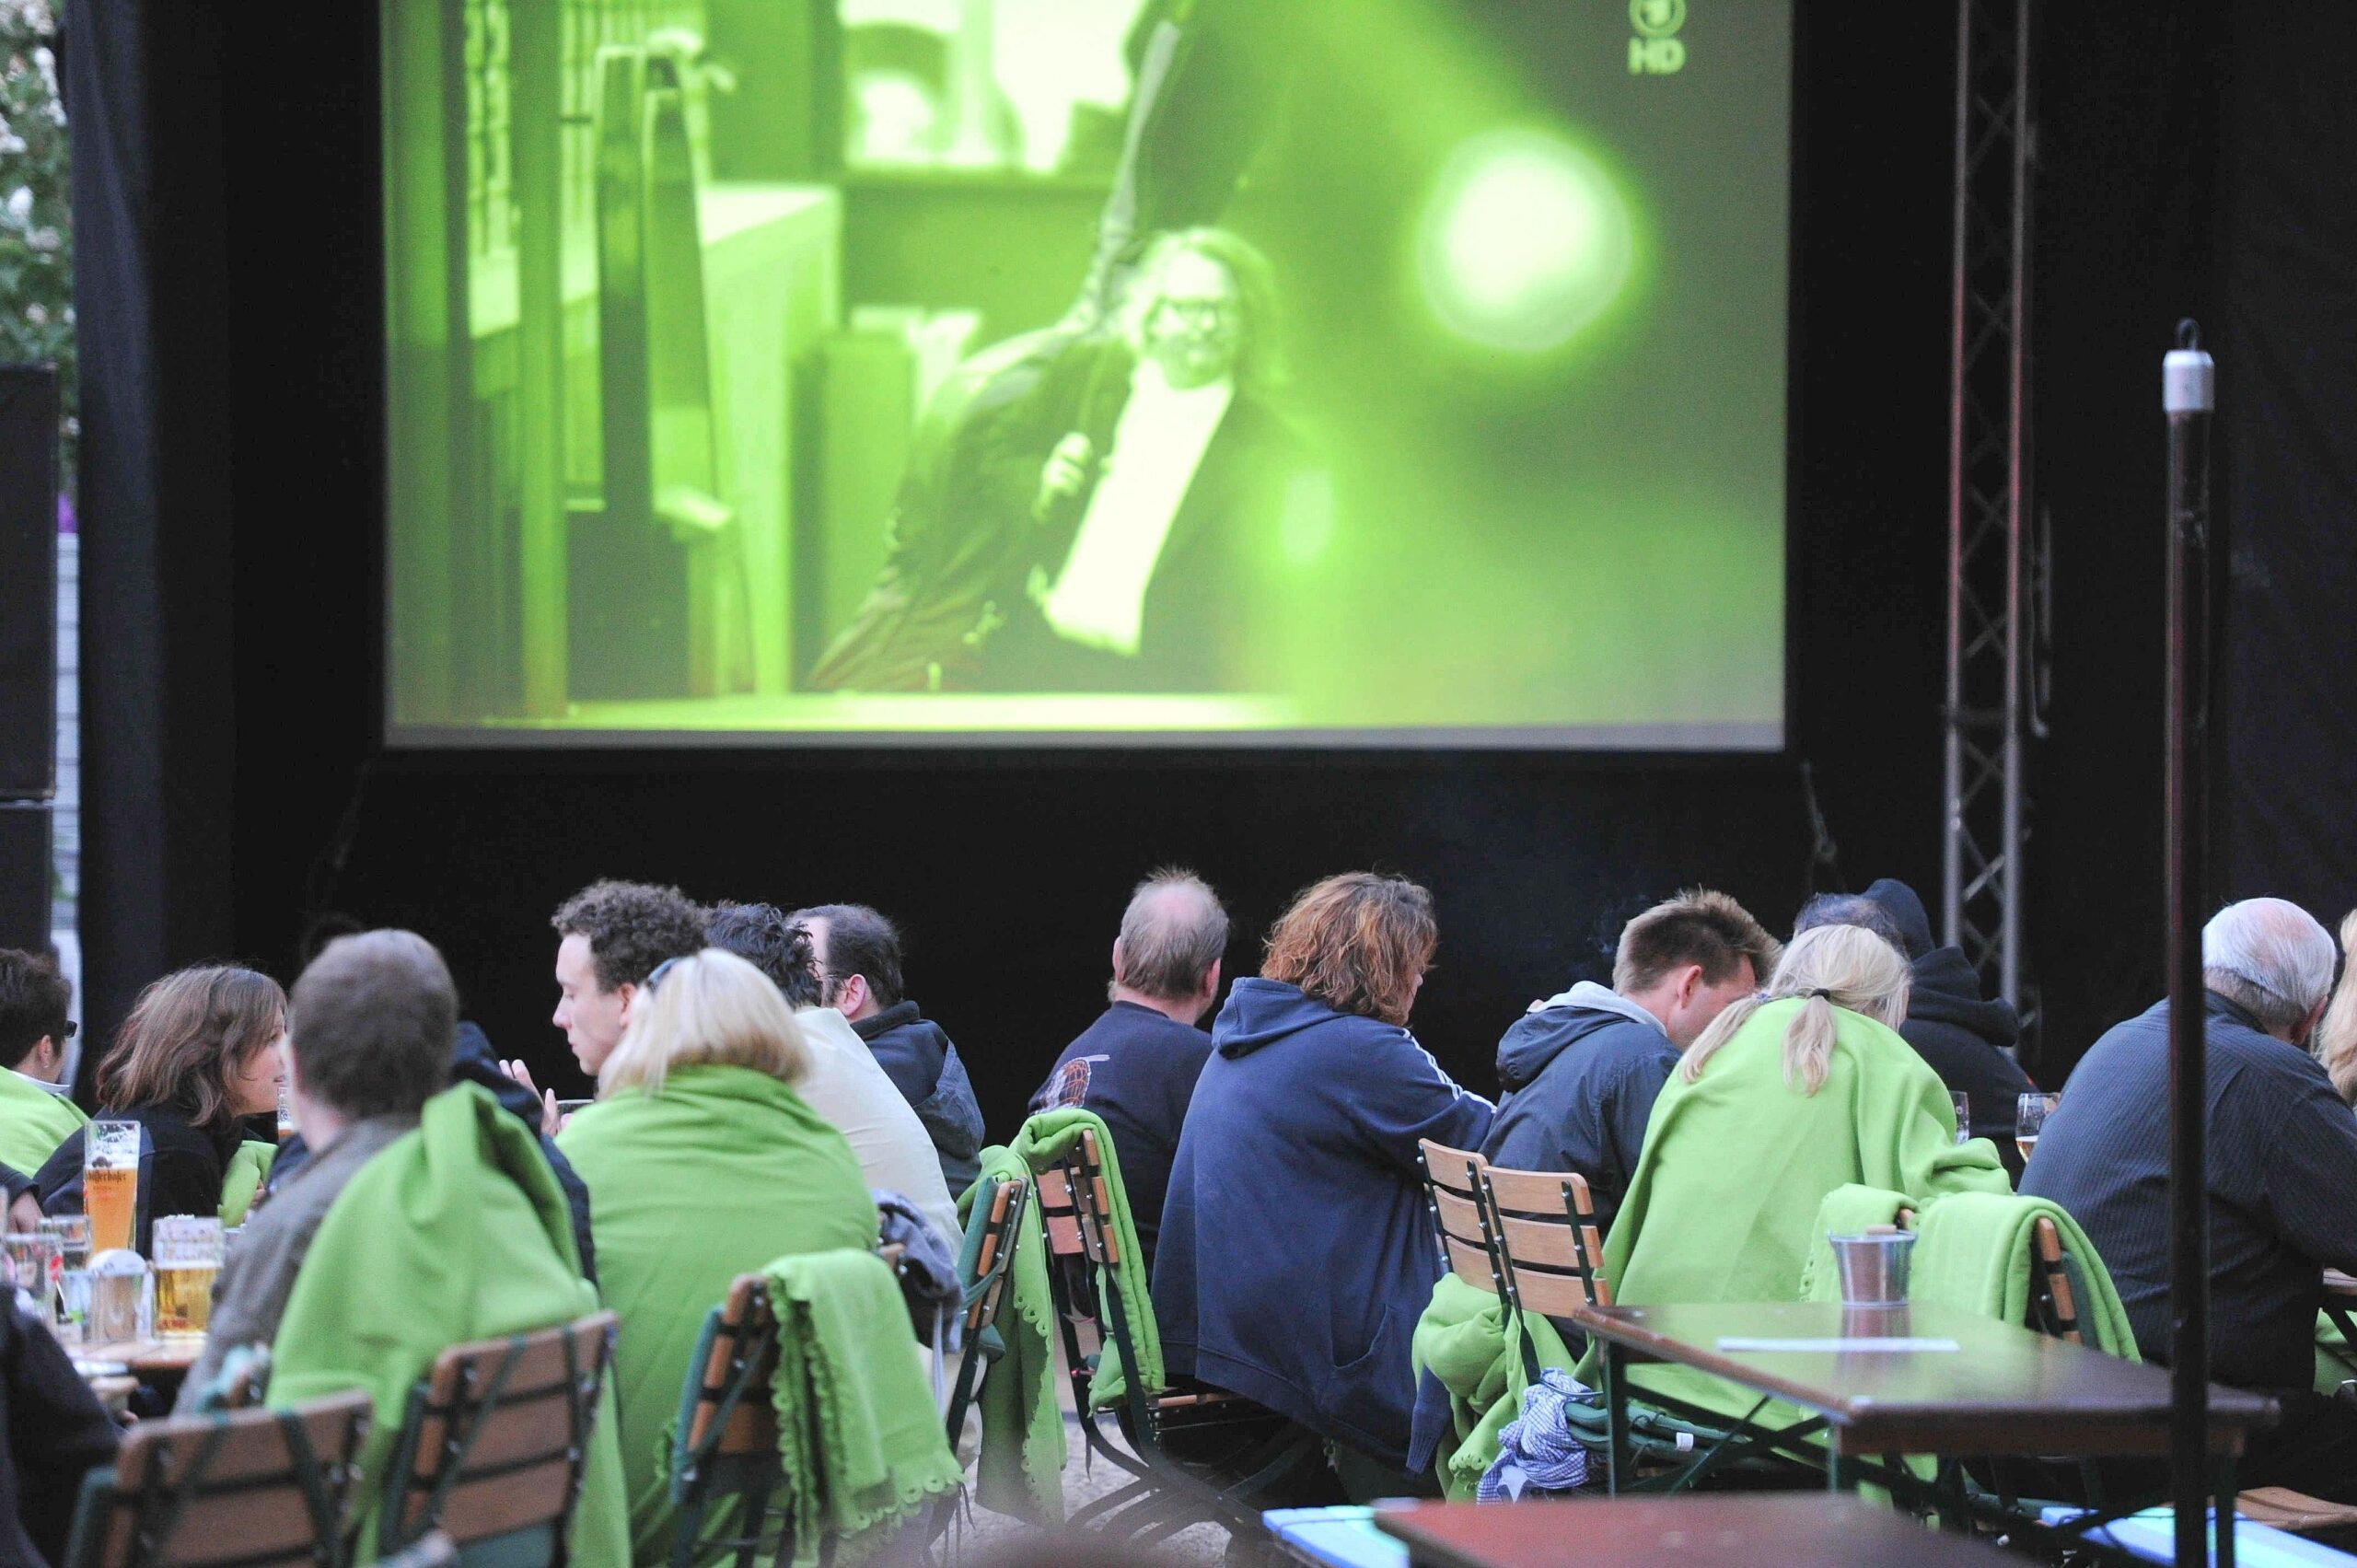 Am Samstag, 14.05.2011 gab es in der Gastwirtschaft Samanns Hof ein Public Viewing. Rudelgucken beim ESC Song Contest in Düsseldorf. Lena schaffte nur den zehnten Platz.Foto: Markus Joosten / WAZ FotoPool.